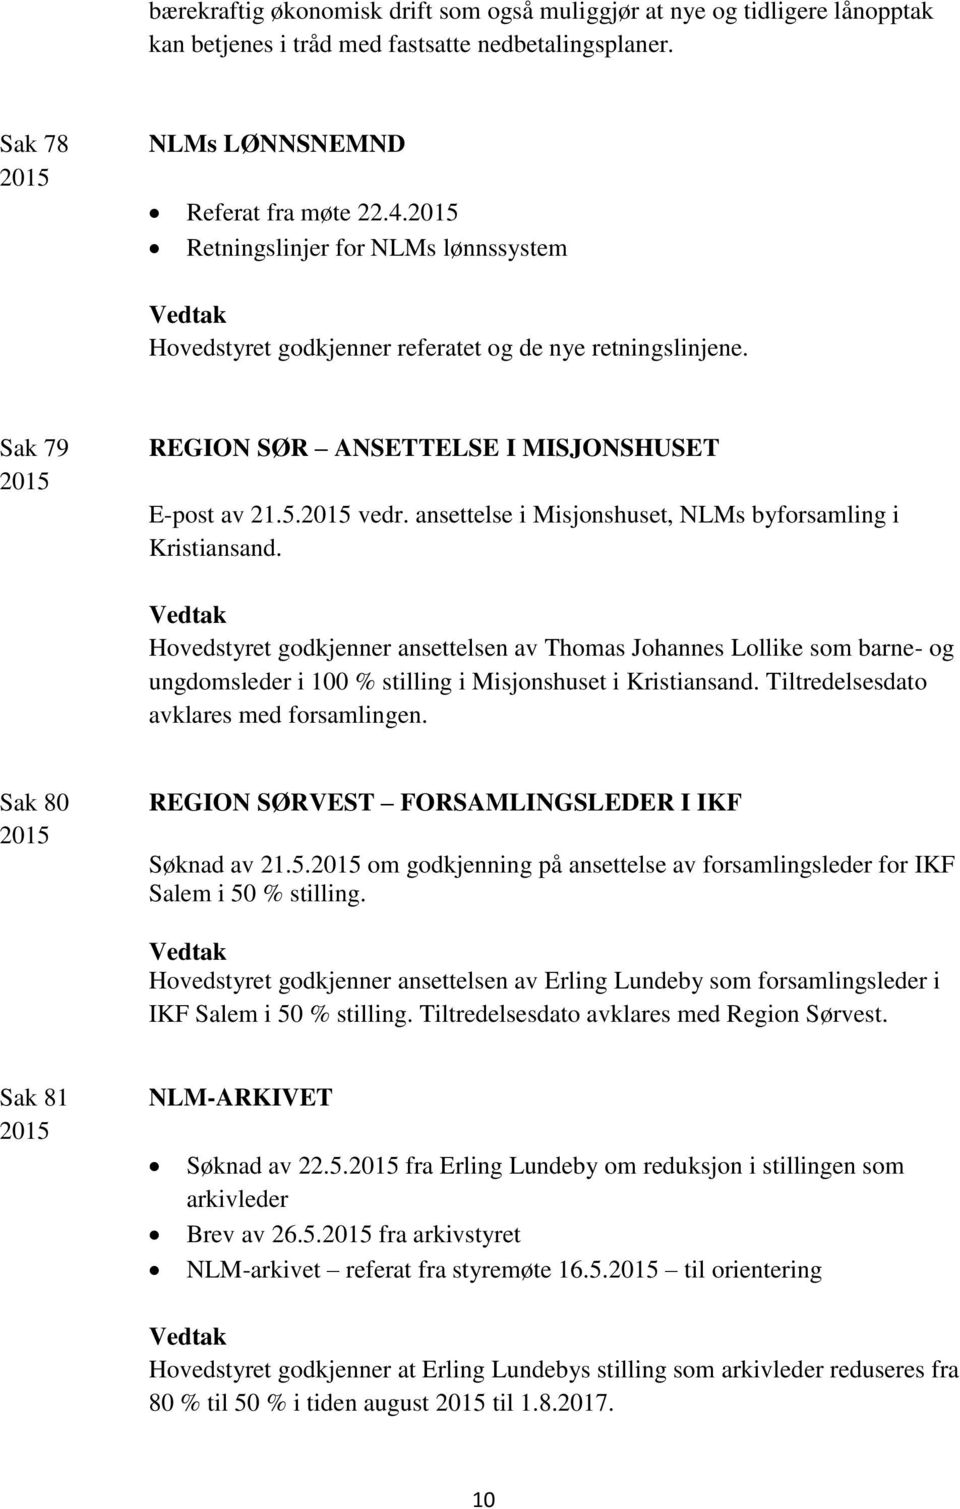 ansettelse i Misjonshuset, NLMs byforsamling i Kristiansand. Hovedstyret godkjenner ansettelsen av Thomas Johannes Lollike som barne- og ungdomsleder i 100 % stilling i Misjonshuset i Kristiansand.